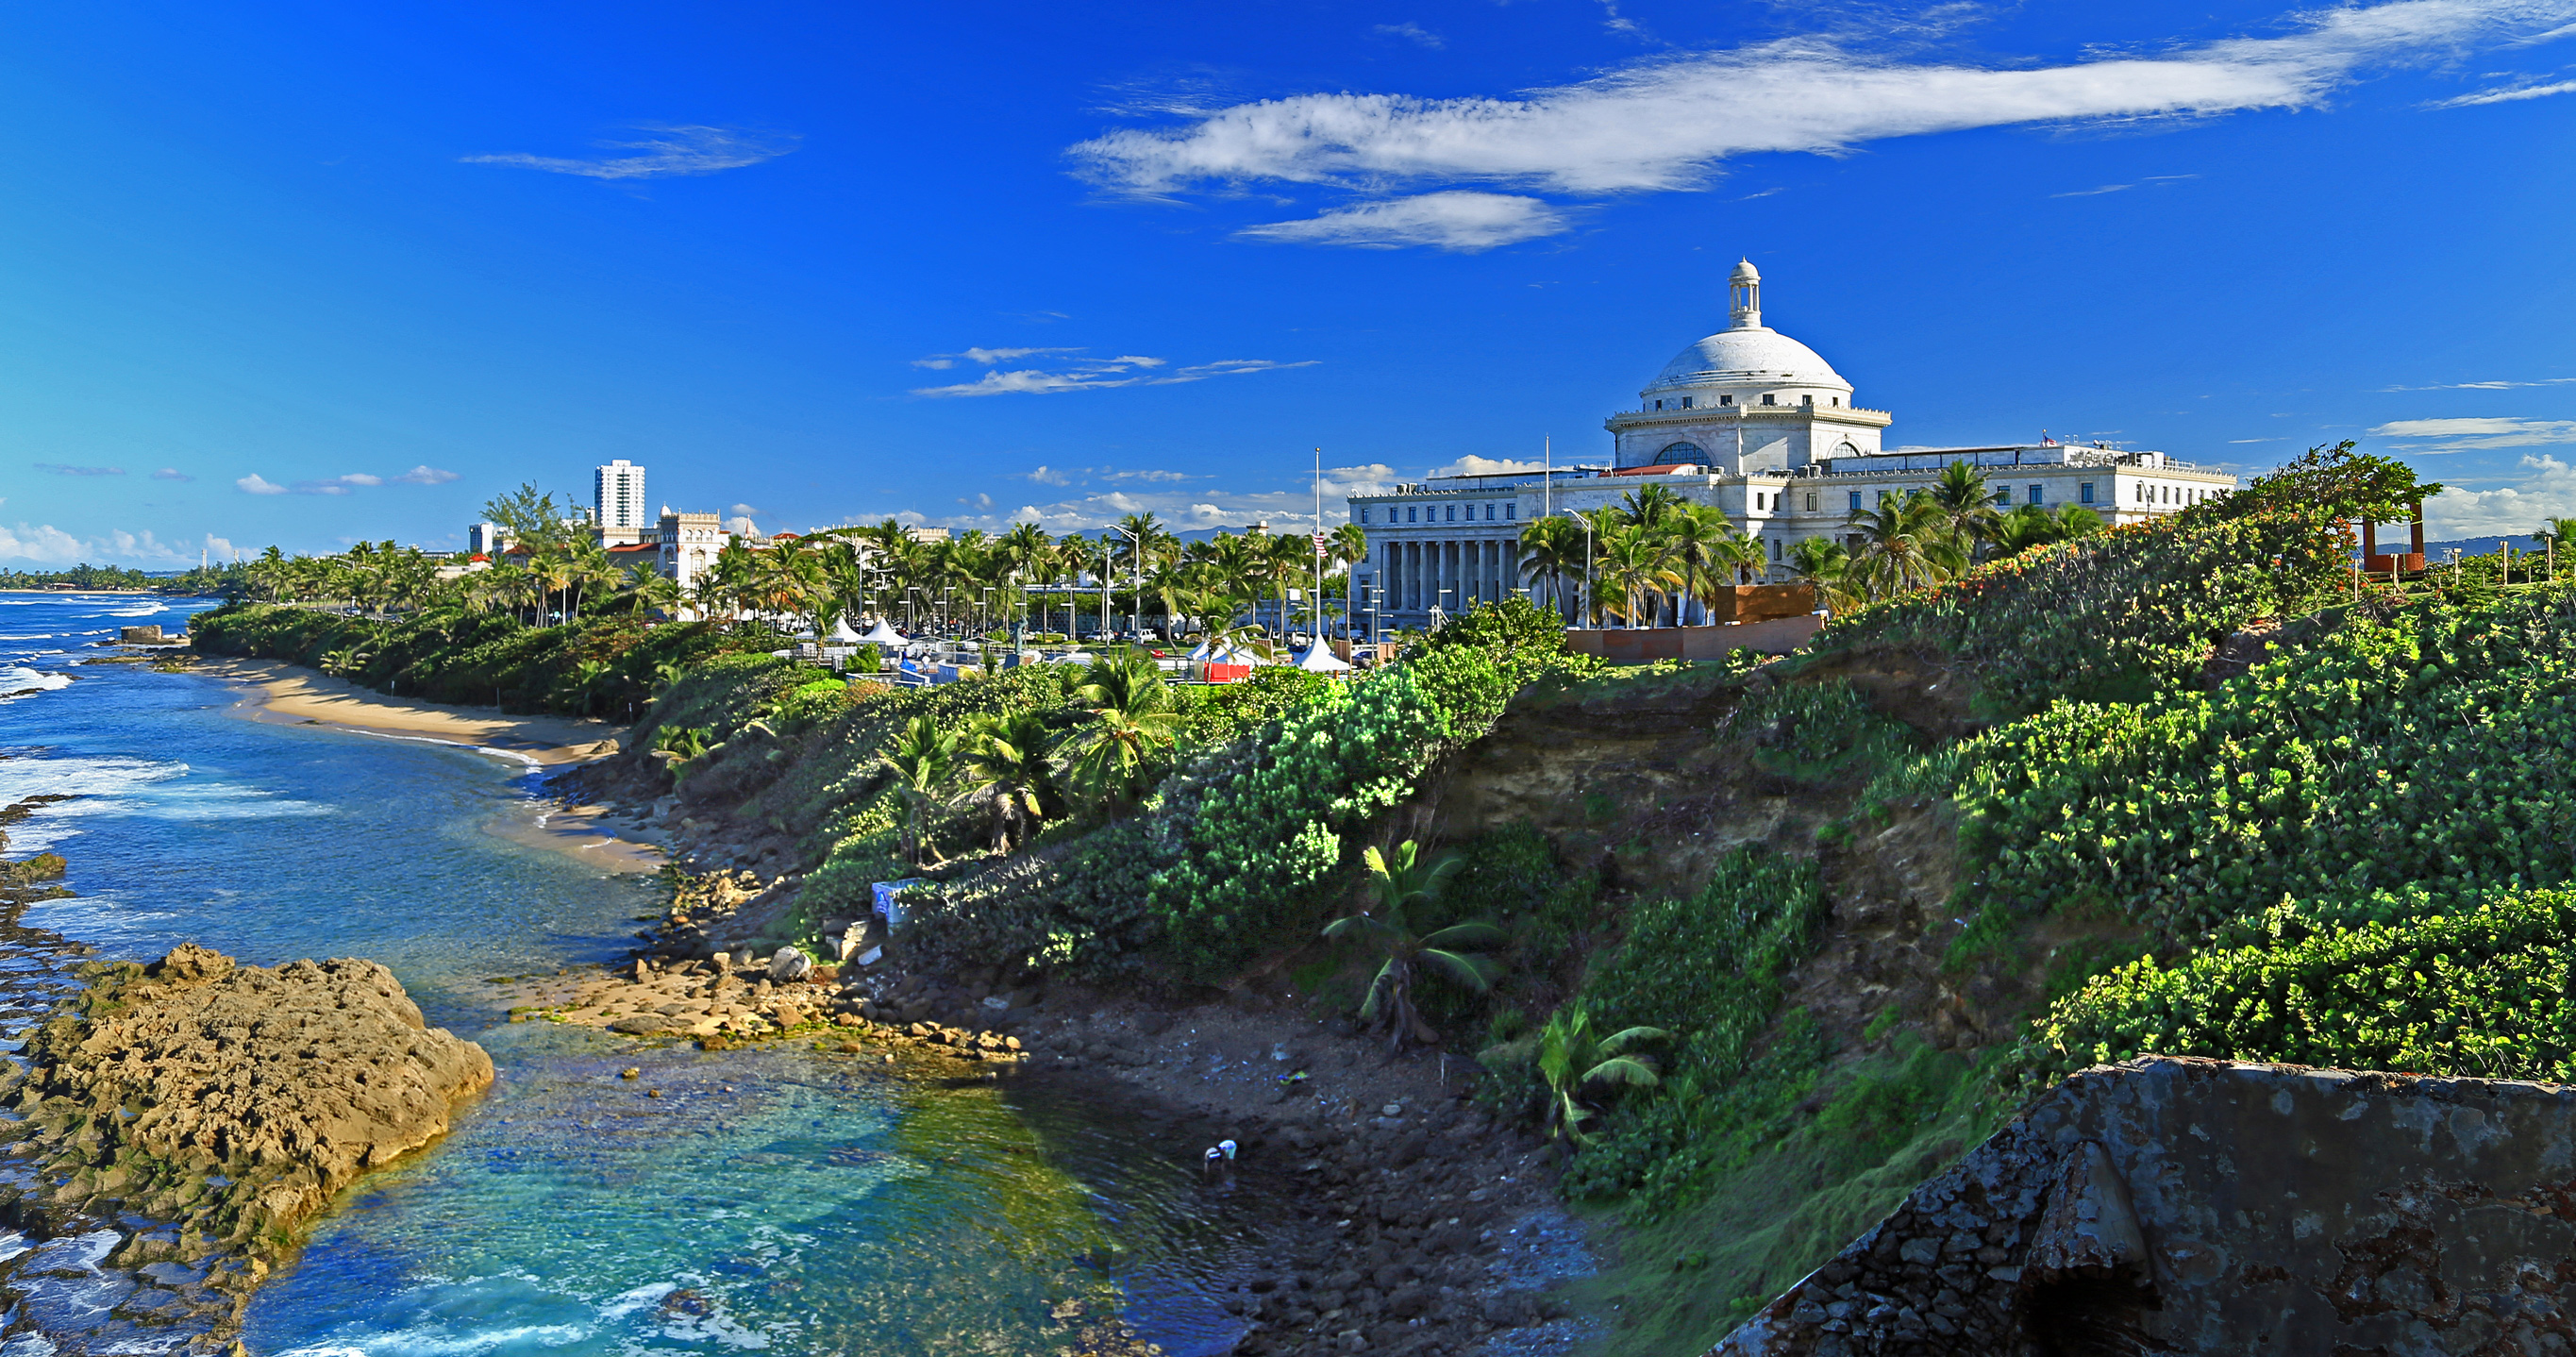 Puerto Rico - Old San Juan - El Capitolio